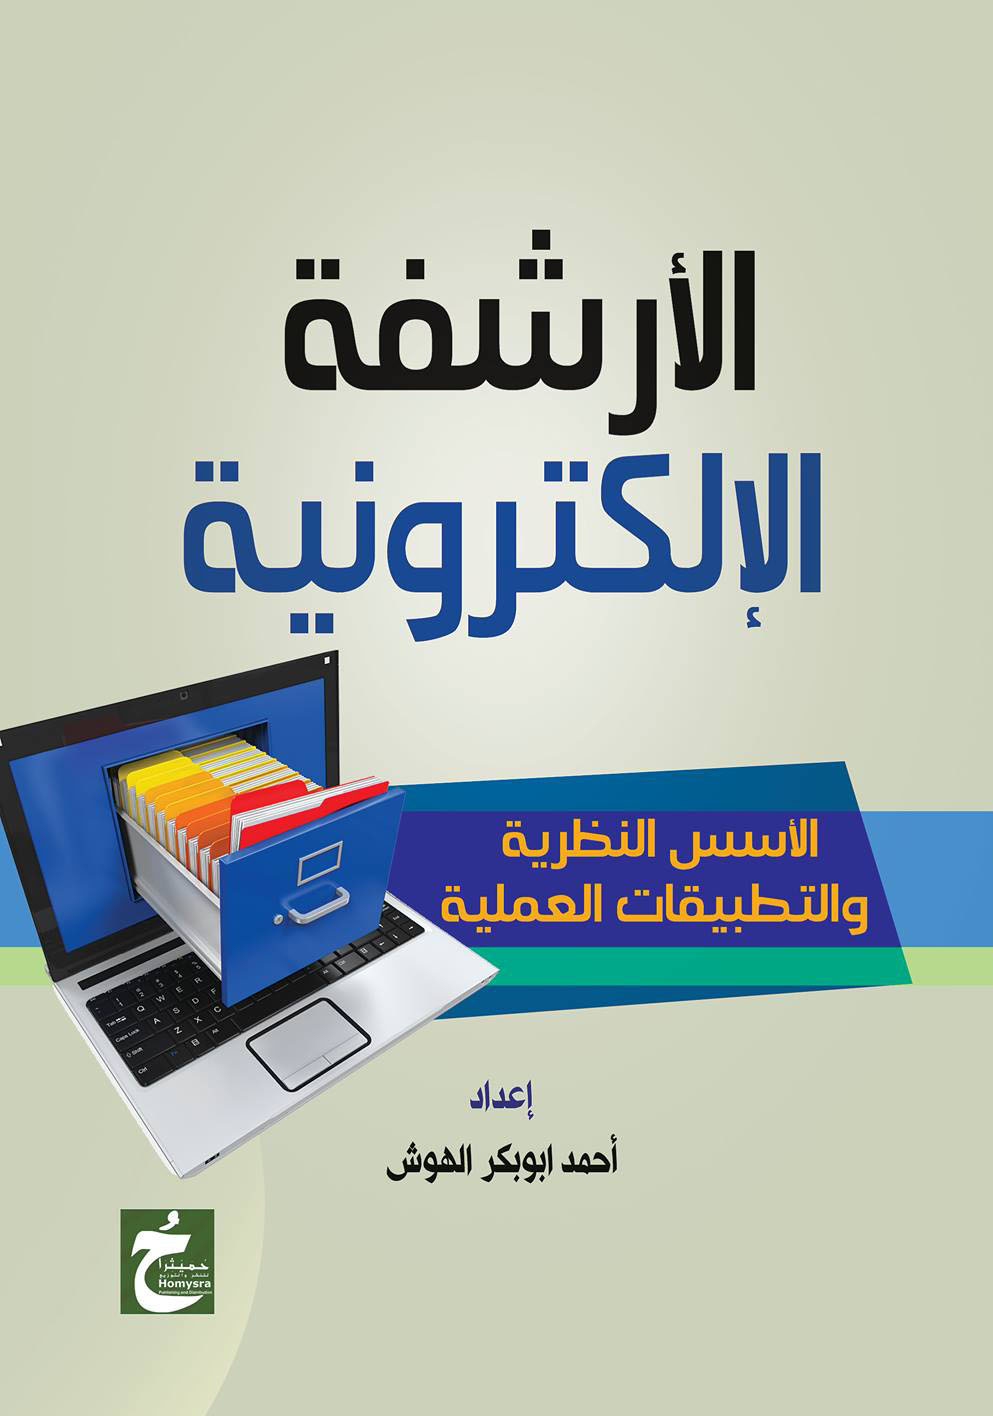 غلاف كتاب الأرشفة الإلكترونية “الأسس النظرية والتطبيقات العملية”